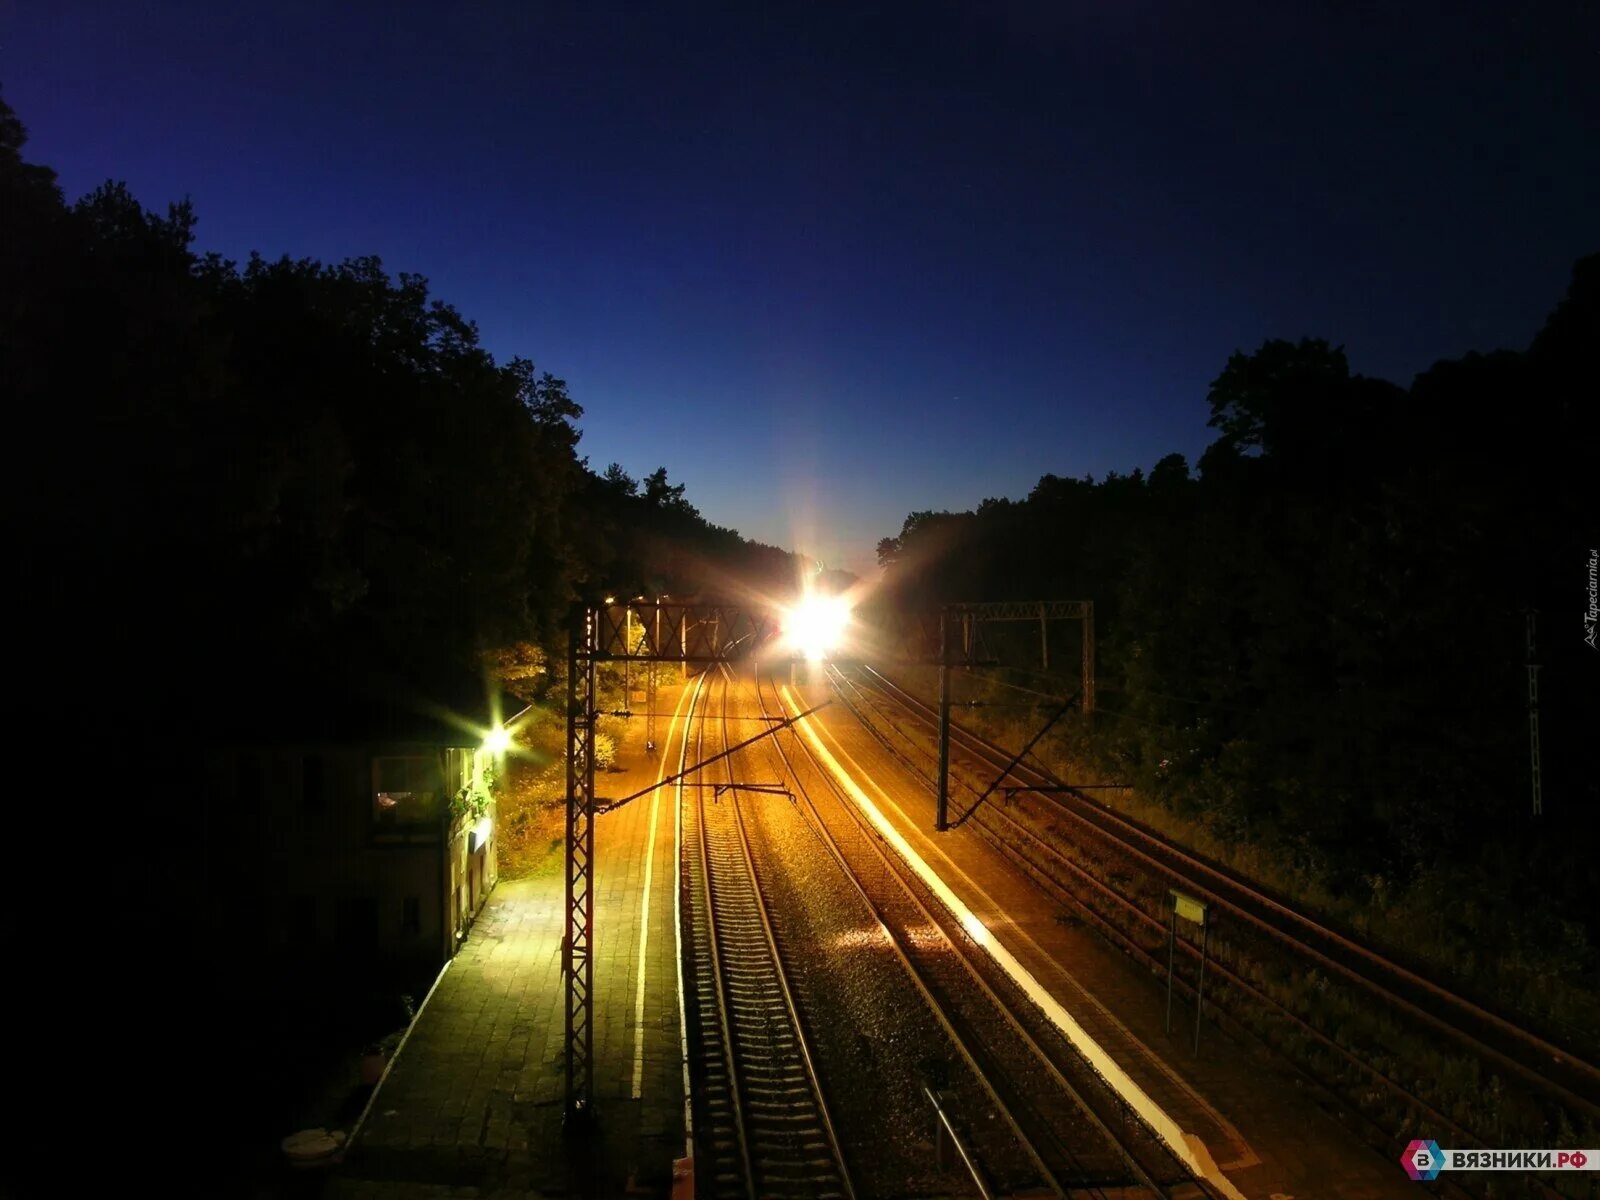 Поезд ночью. Железная дорога ночью. Фары поезда. Ночной вокзал. Поезд едет вечером